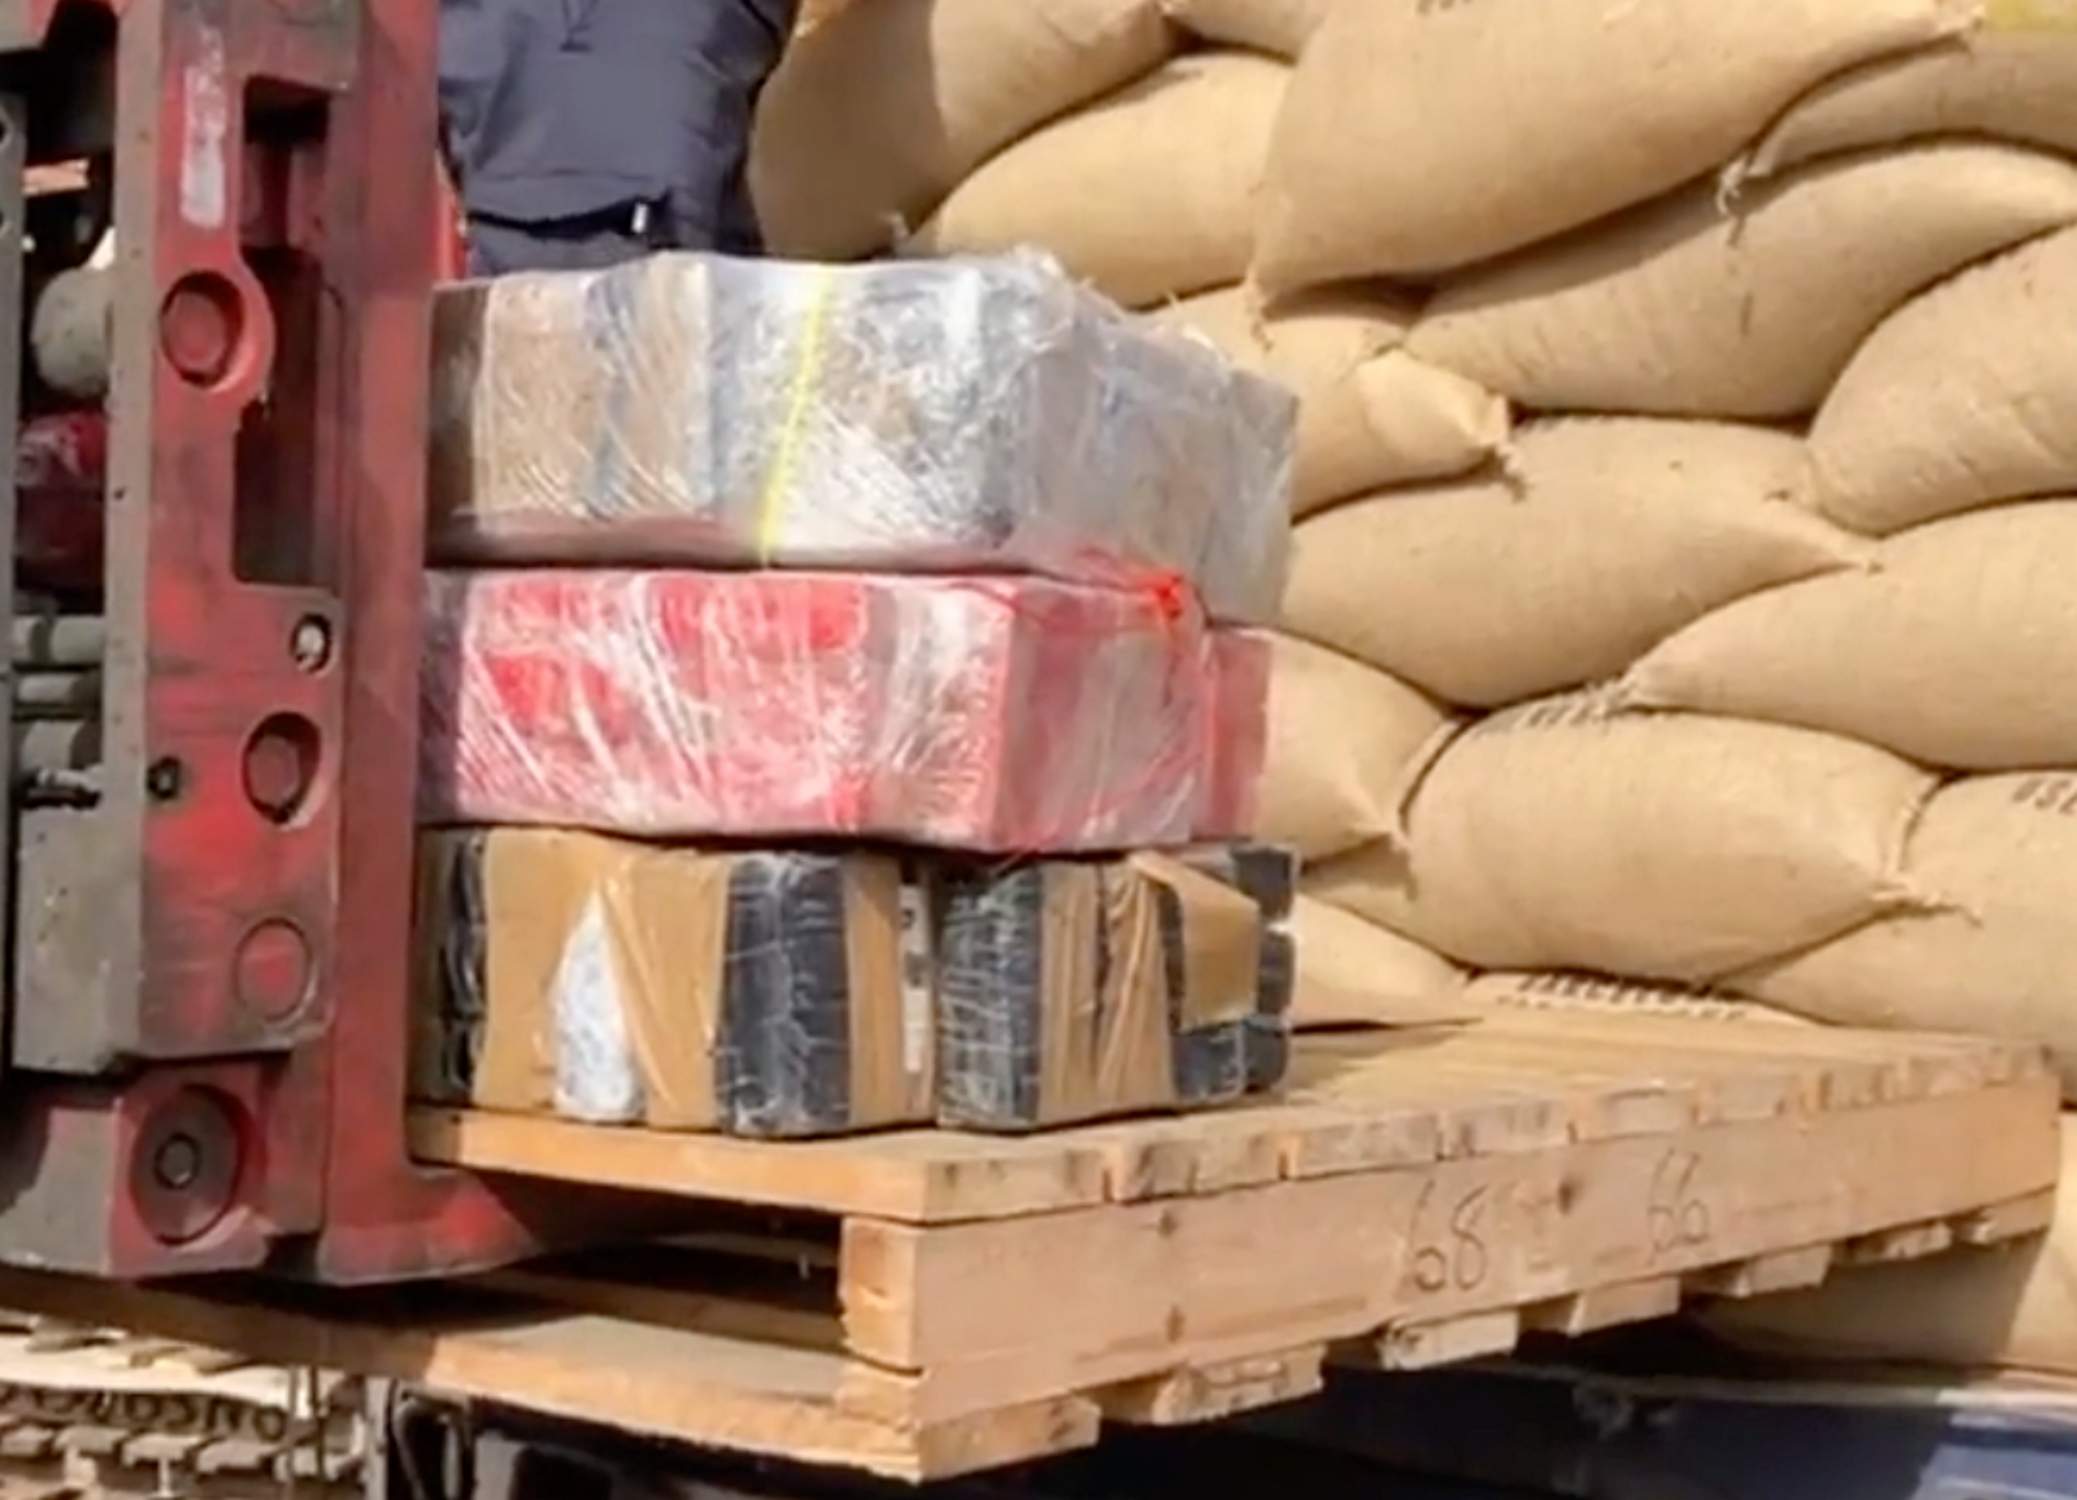 Port de Barcelona, puerta entrada de la cocaína en Catalunya: 419 kilos escondidos en café de Costa Rica